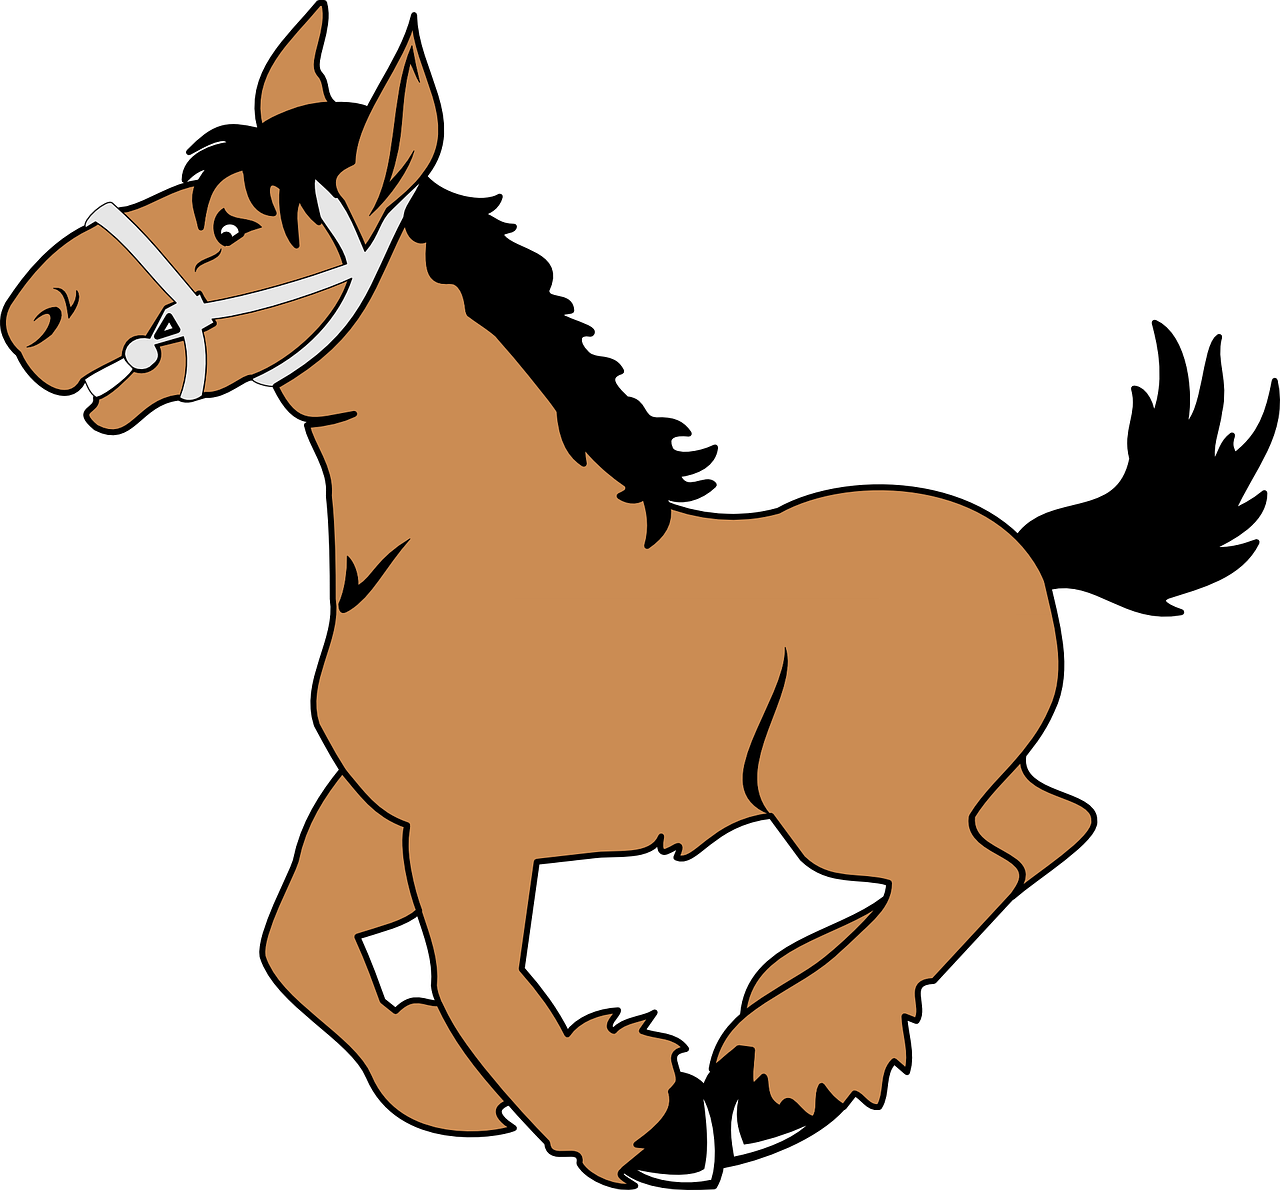 La imagen muestra un caballo